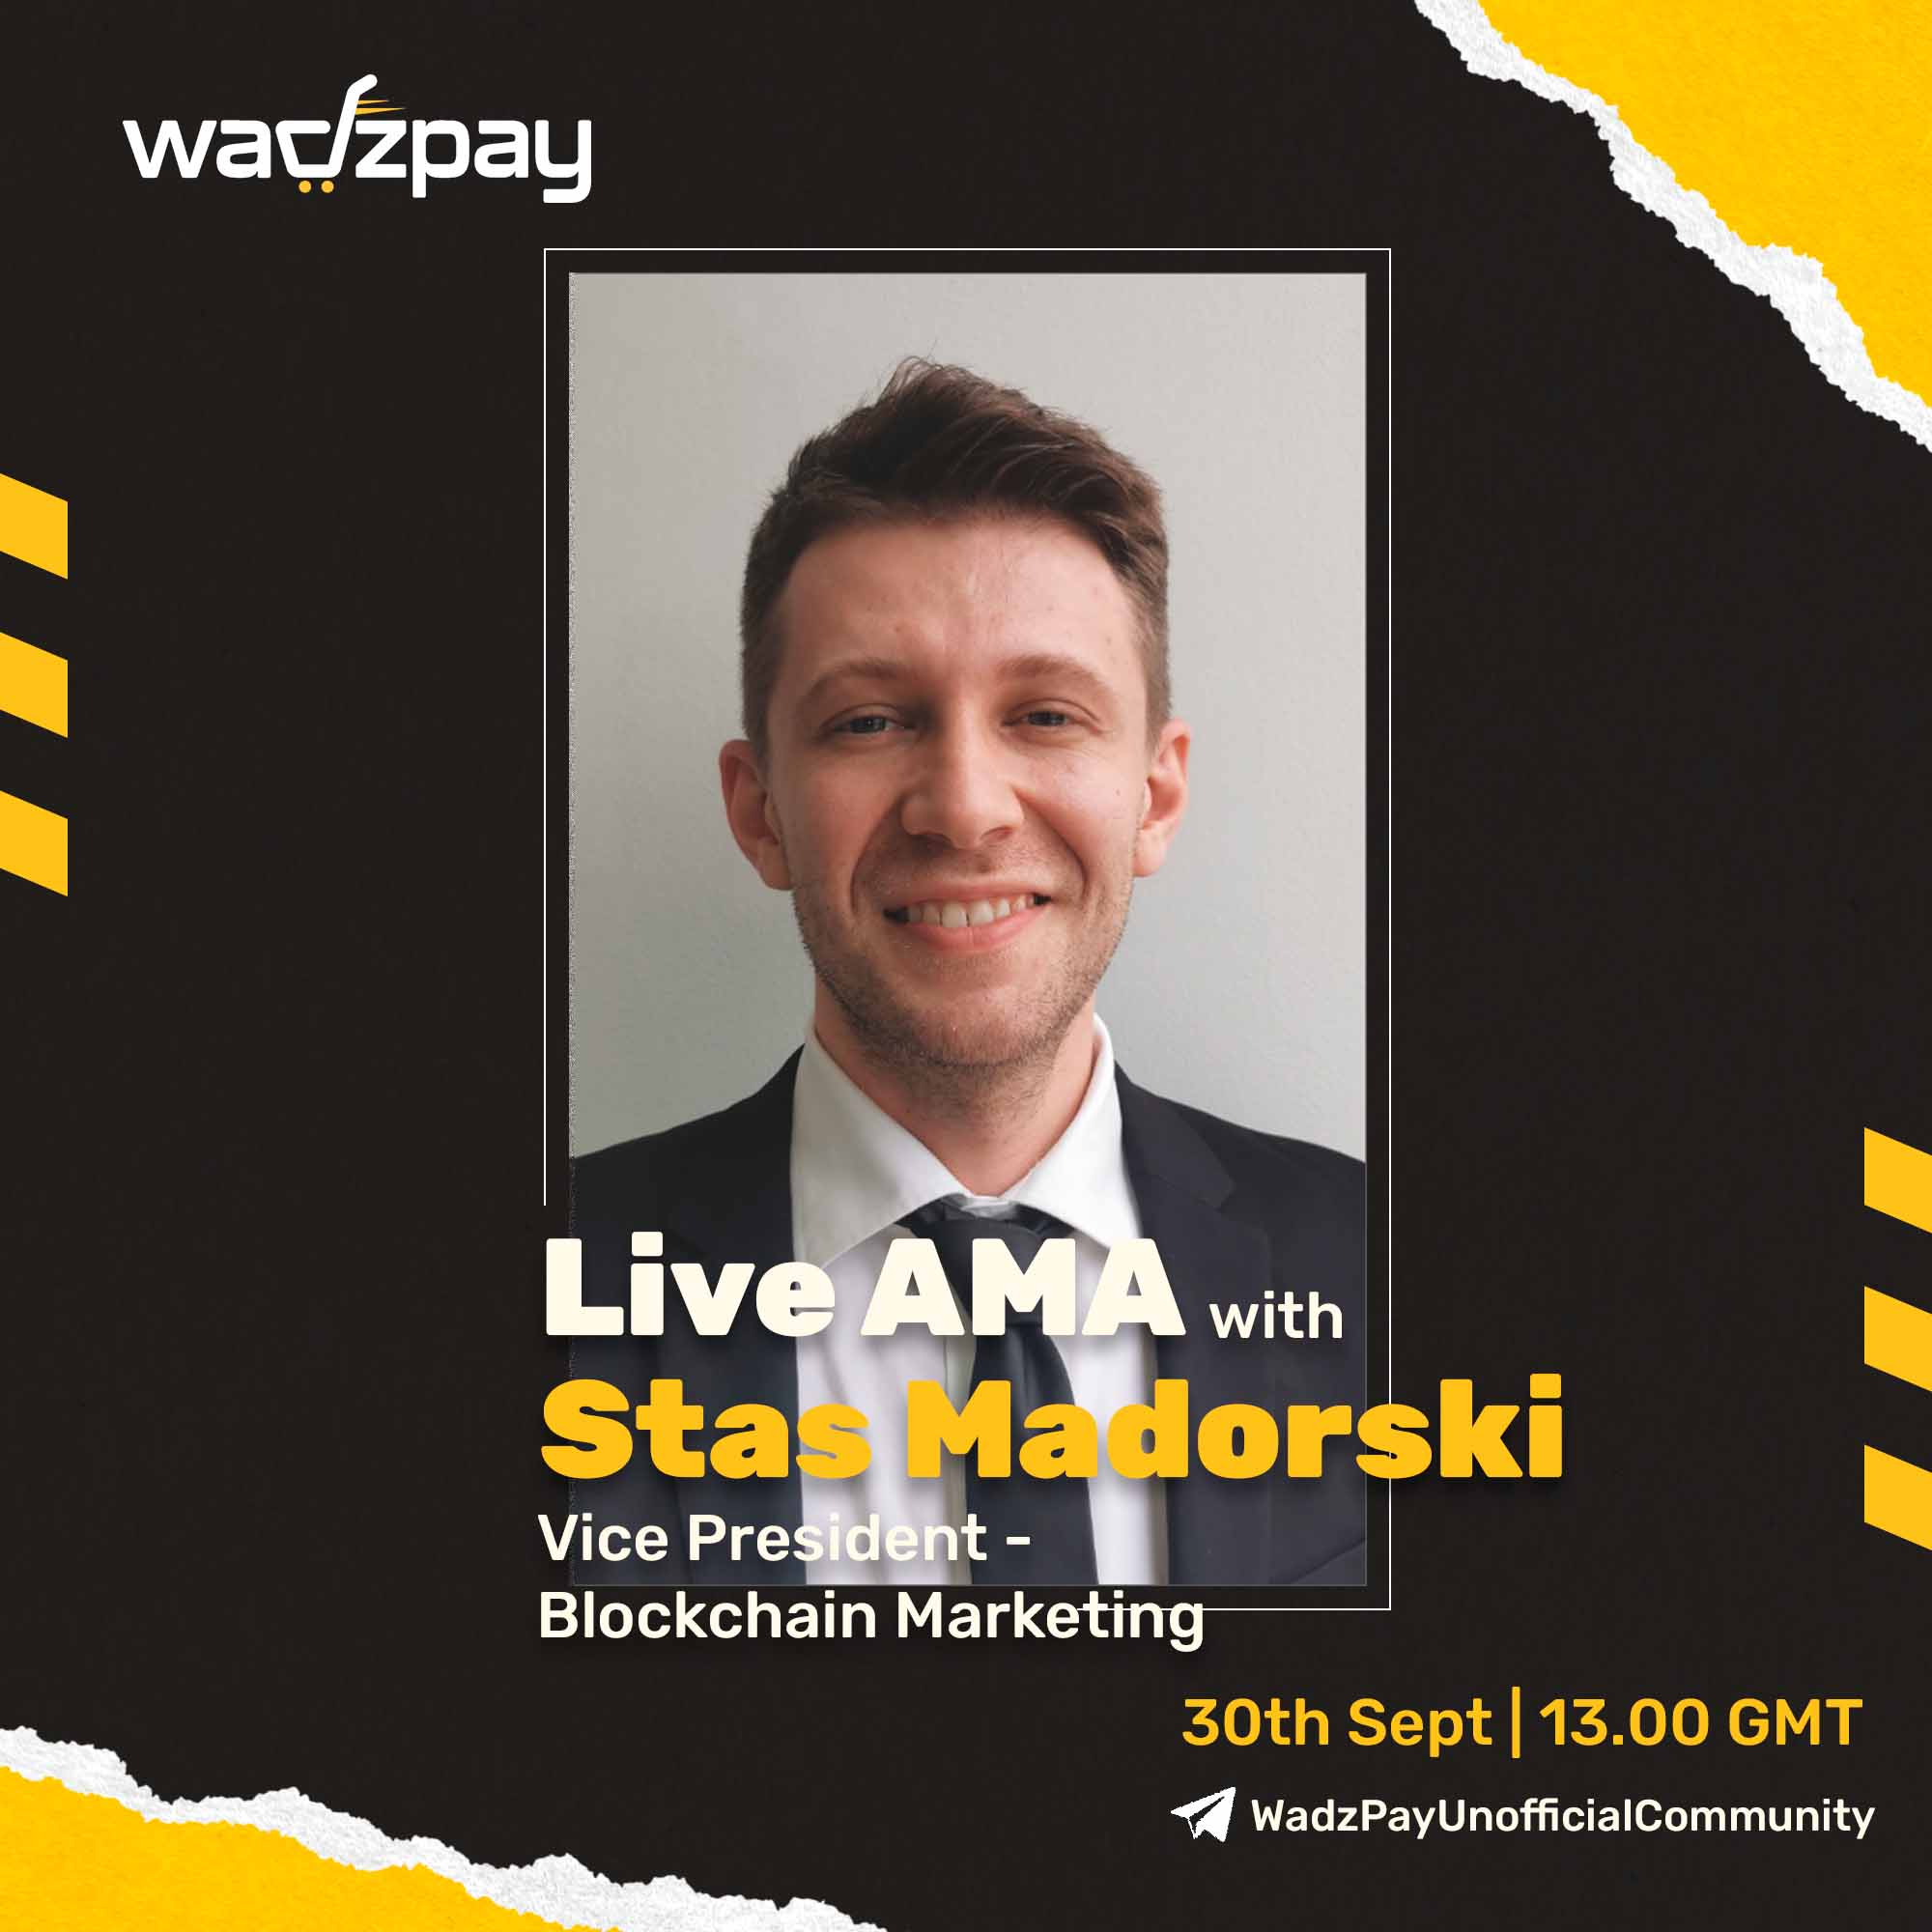 Live AMA with Stas Madorski